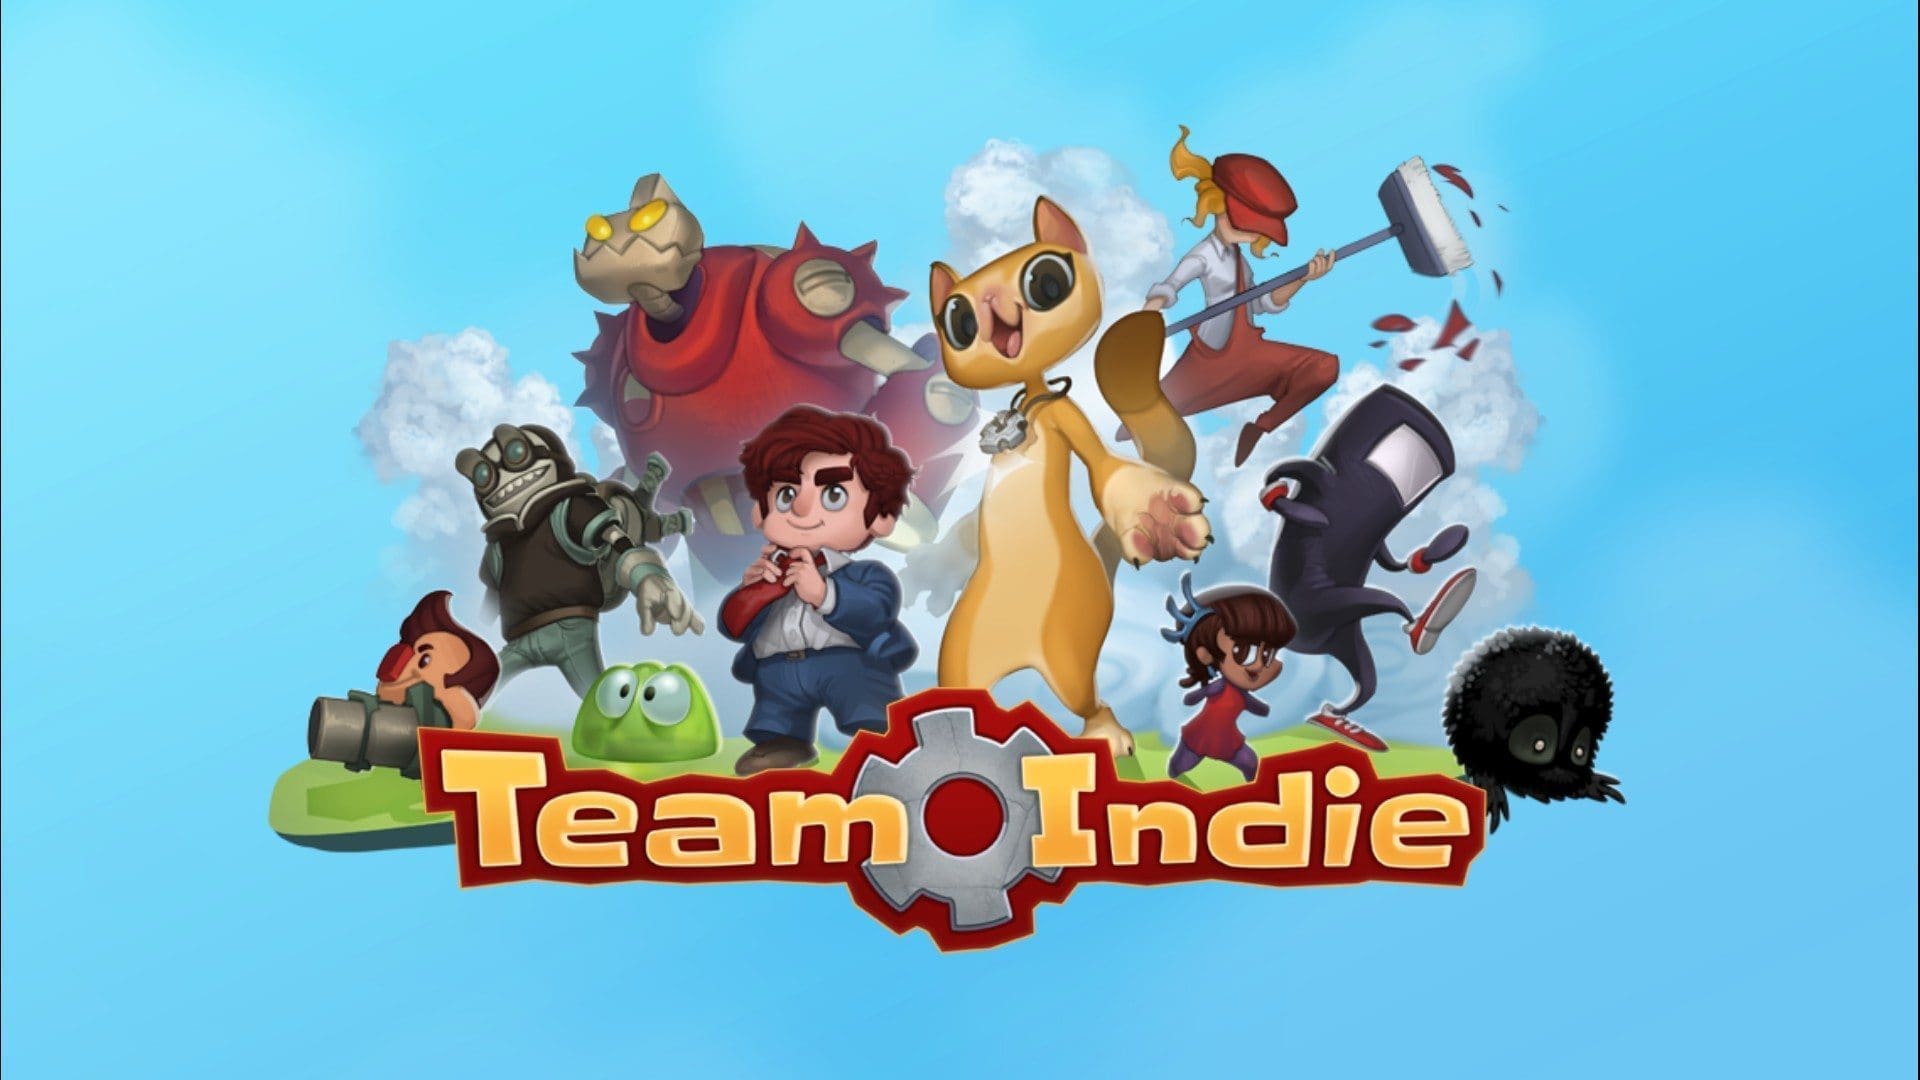 Team Indie by Brightside Games